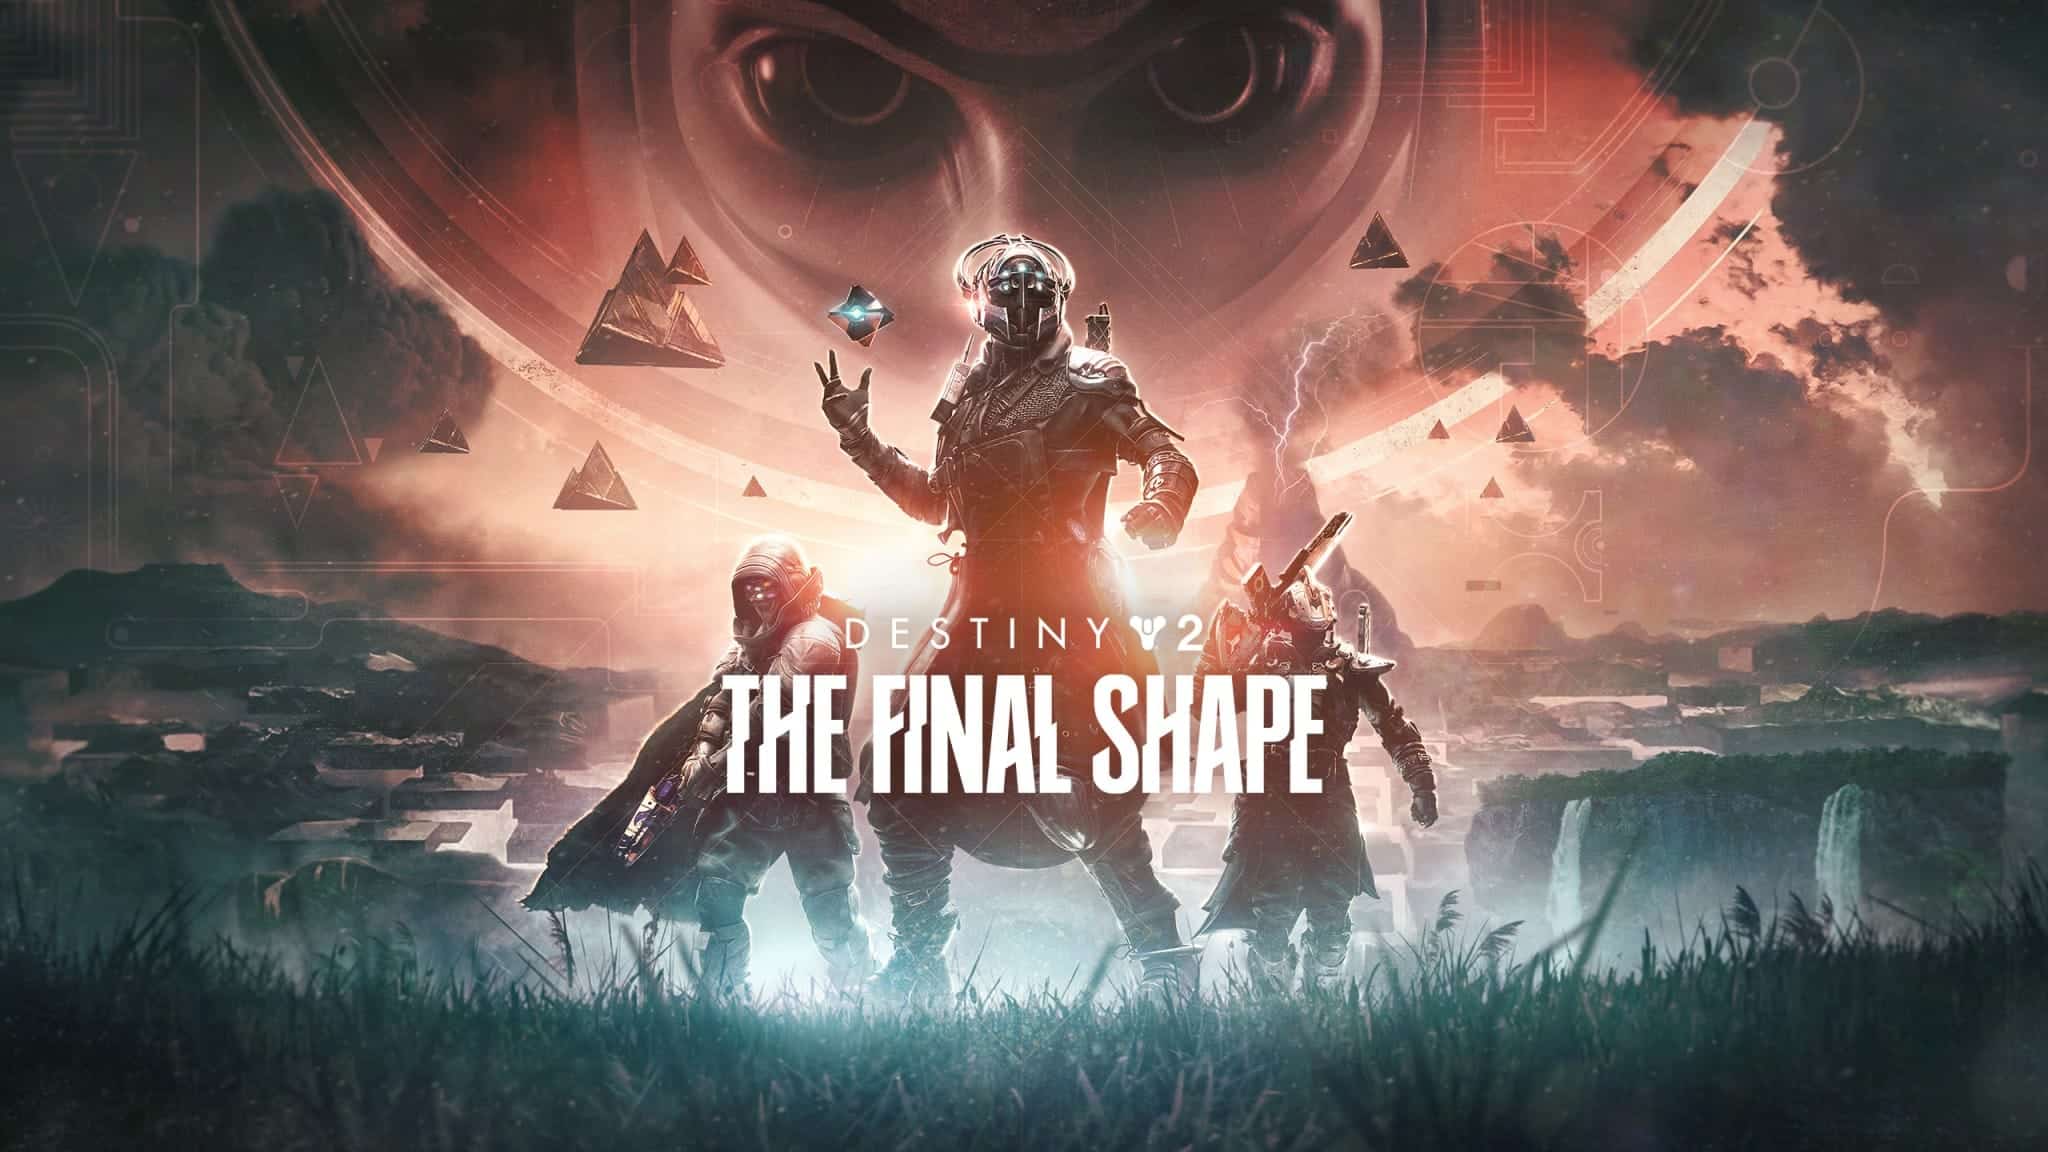 The Final Shape, dernière expansion développée par Bungie